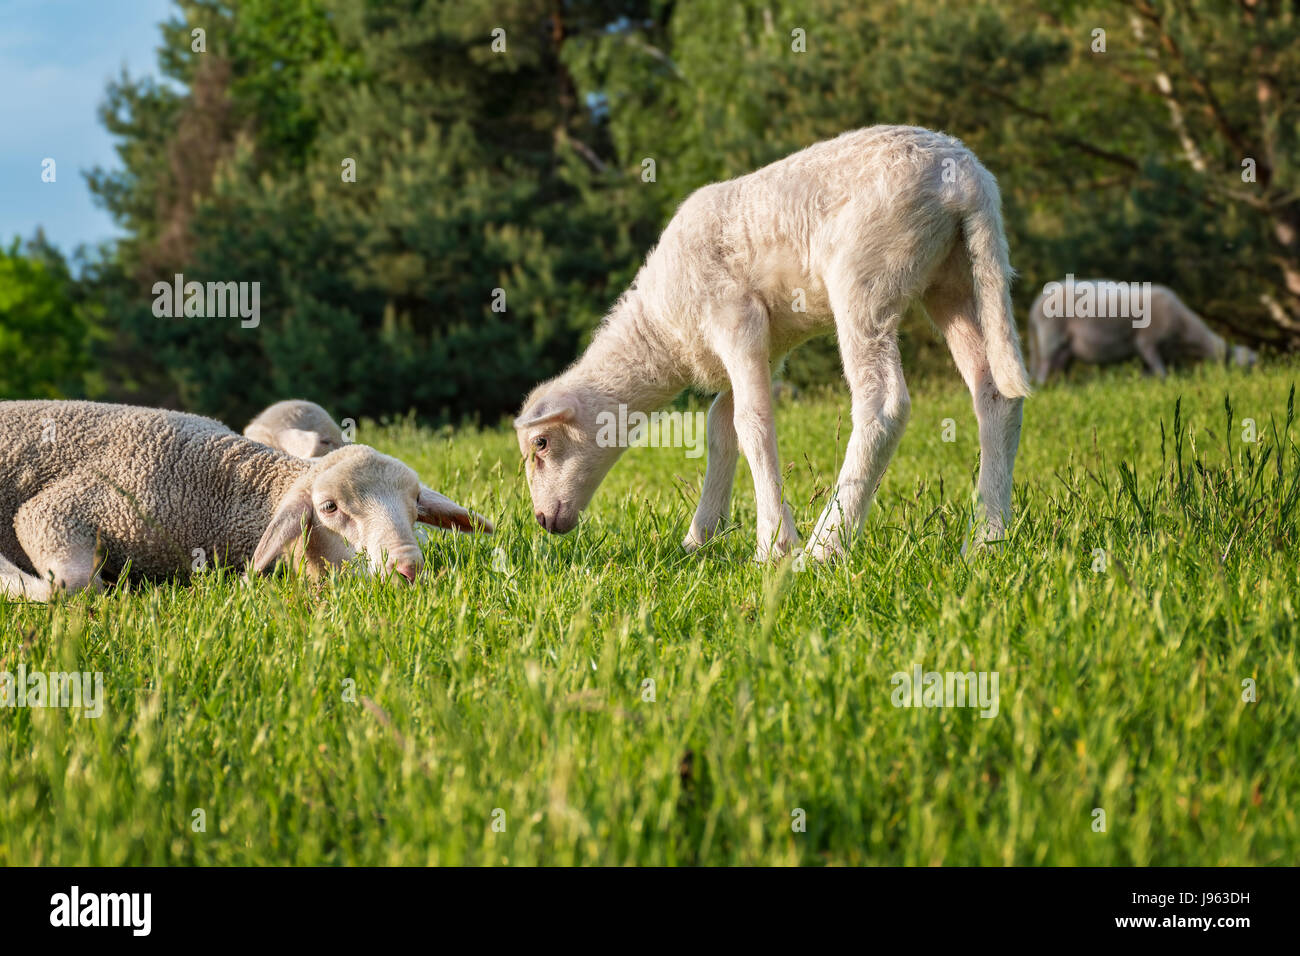 Cordero blanco con su madre, comiendo hierba Foto de stock